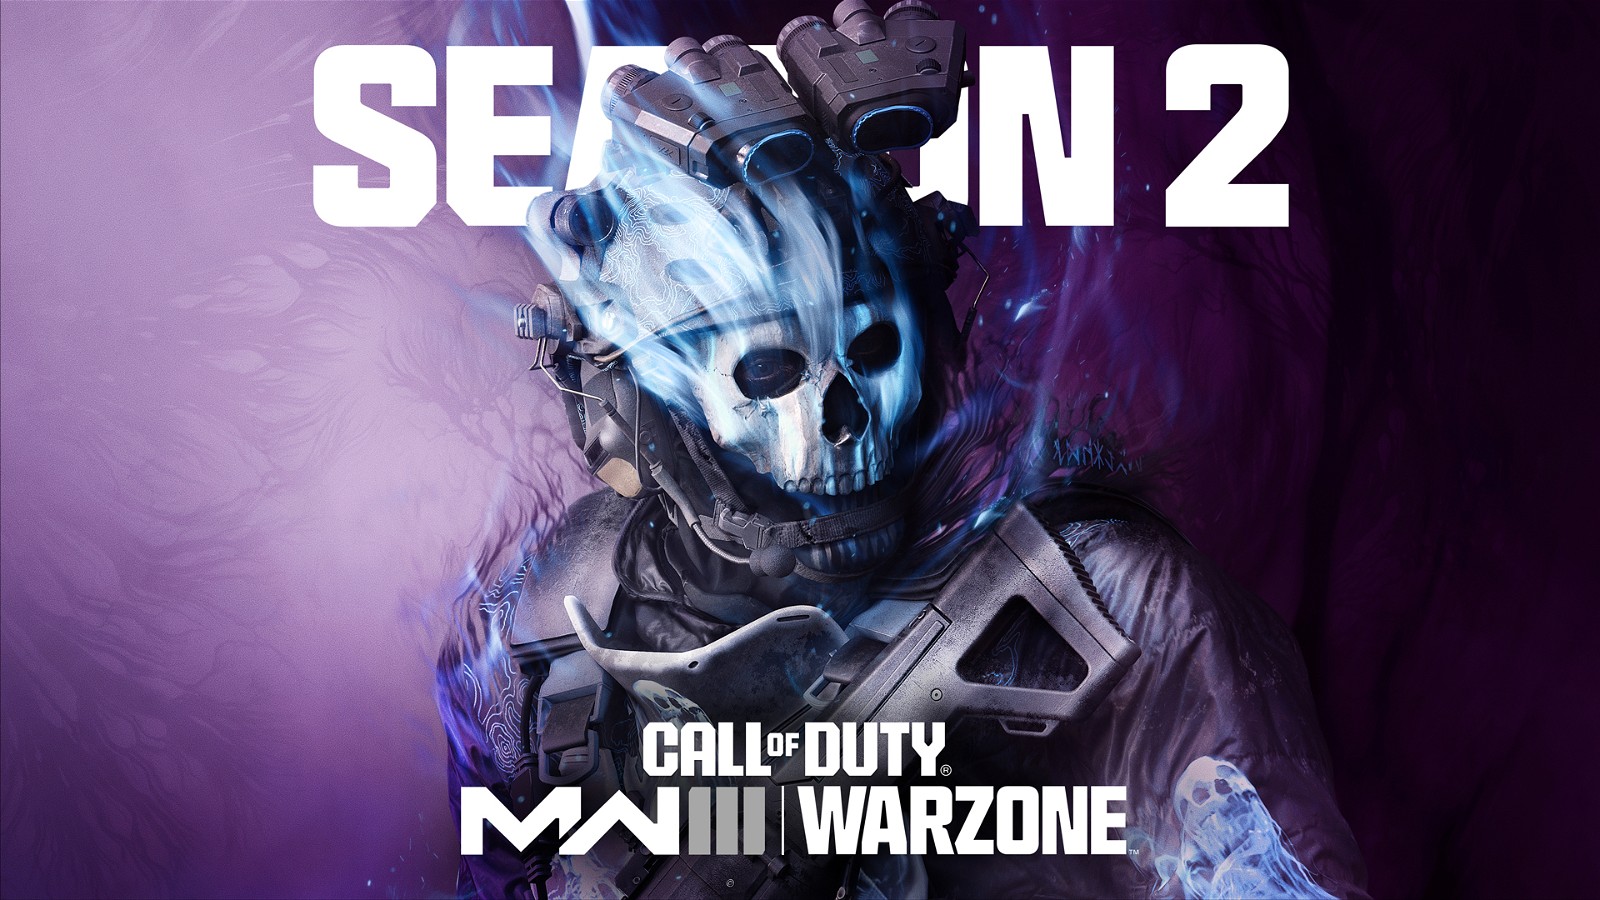 «Мы ГОТОВИМ»: игроки в Call of Duty: Modern Warfare 3 Zombies выступают с хвастливым заявлением разработчиков на фоне разочаровывающего обновления второго сезона